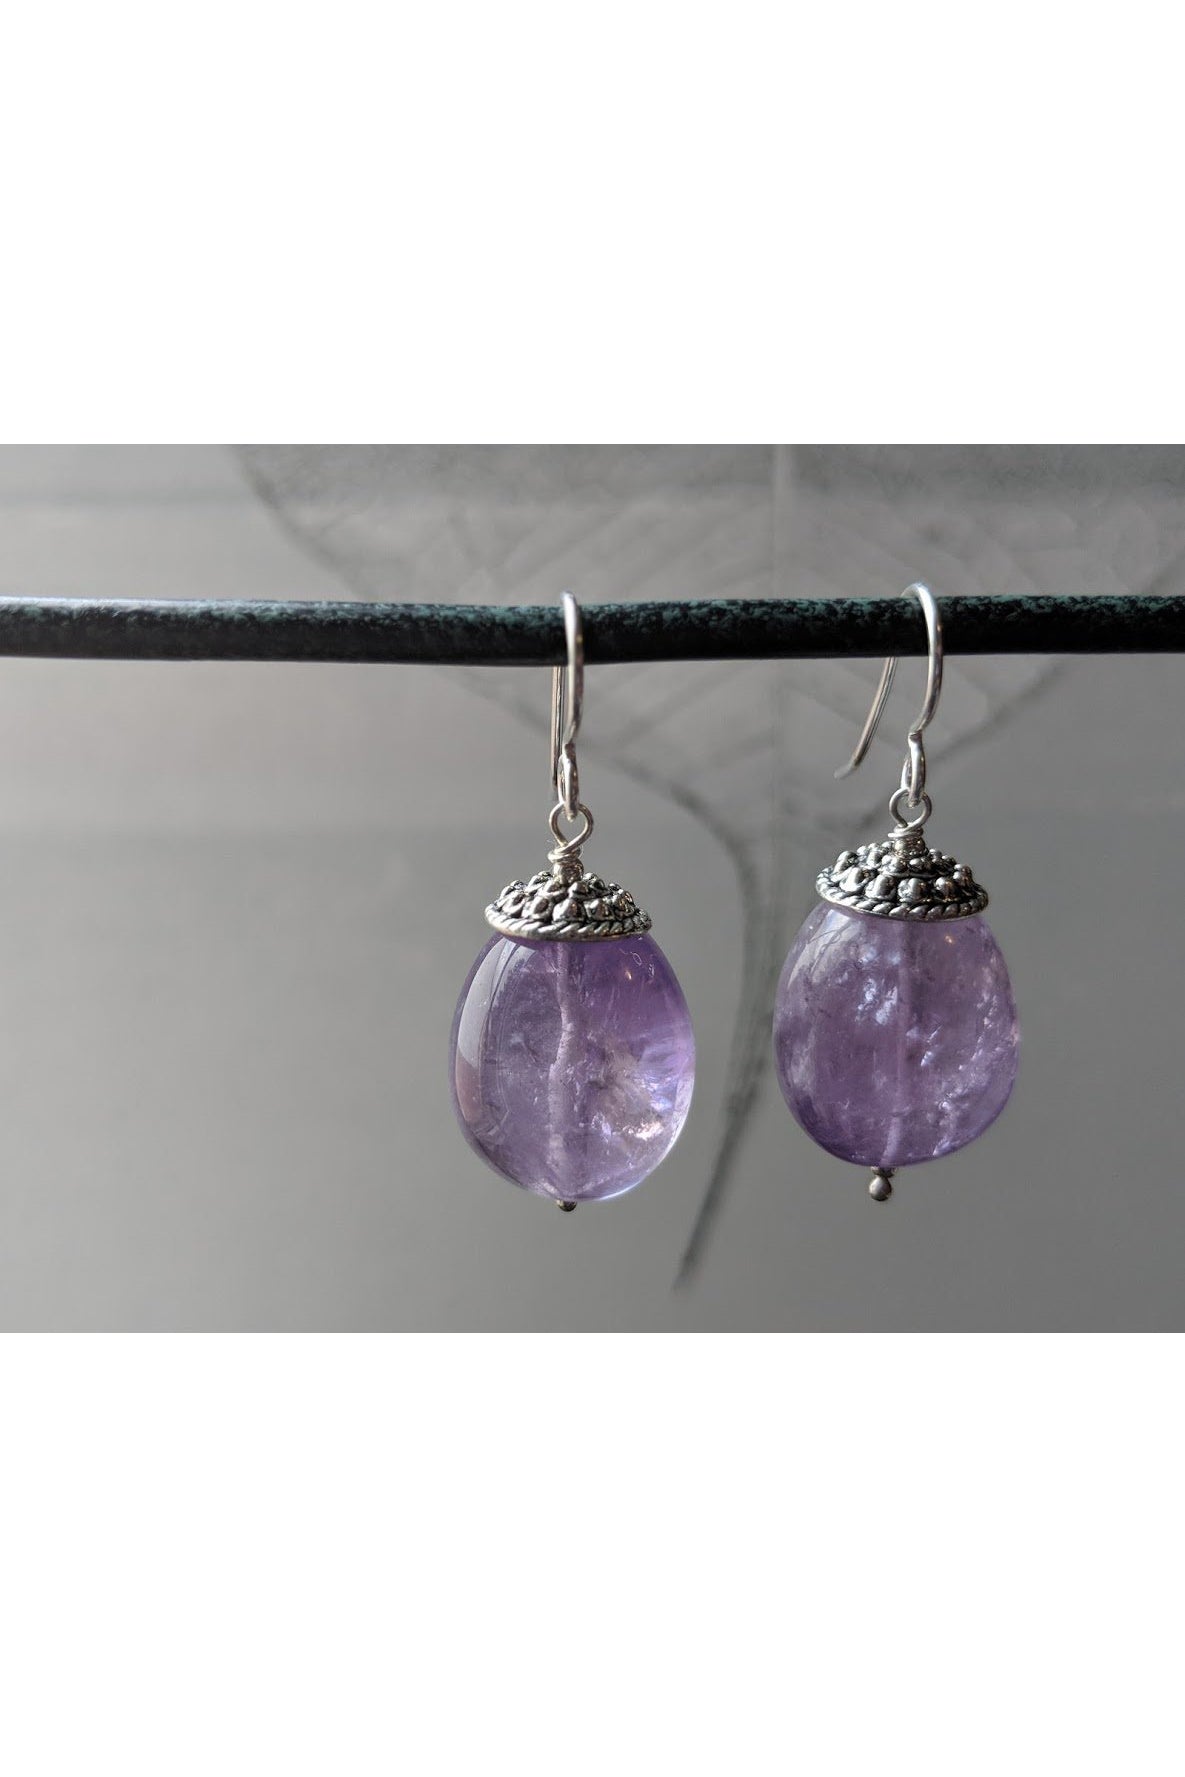 Polished Amethyst Gemstone Light Purple Earrings